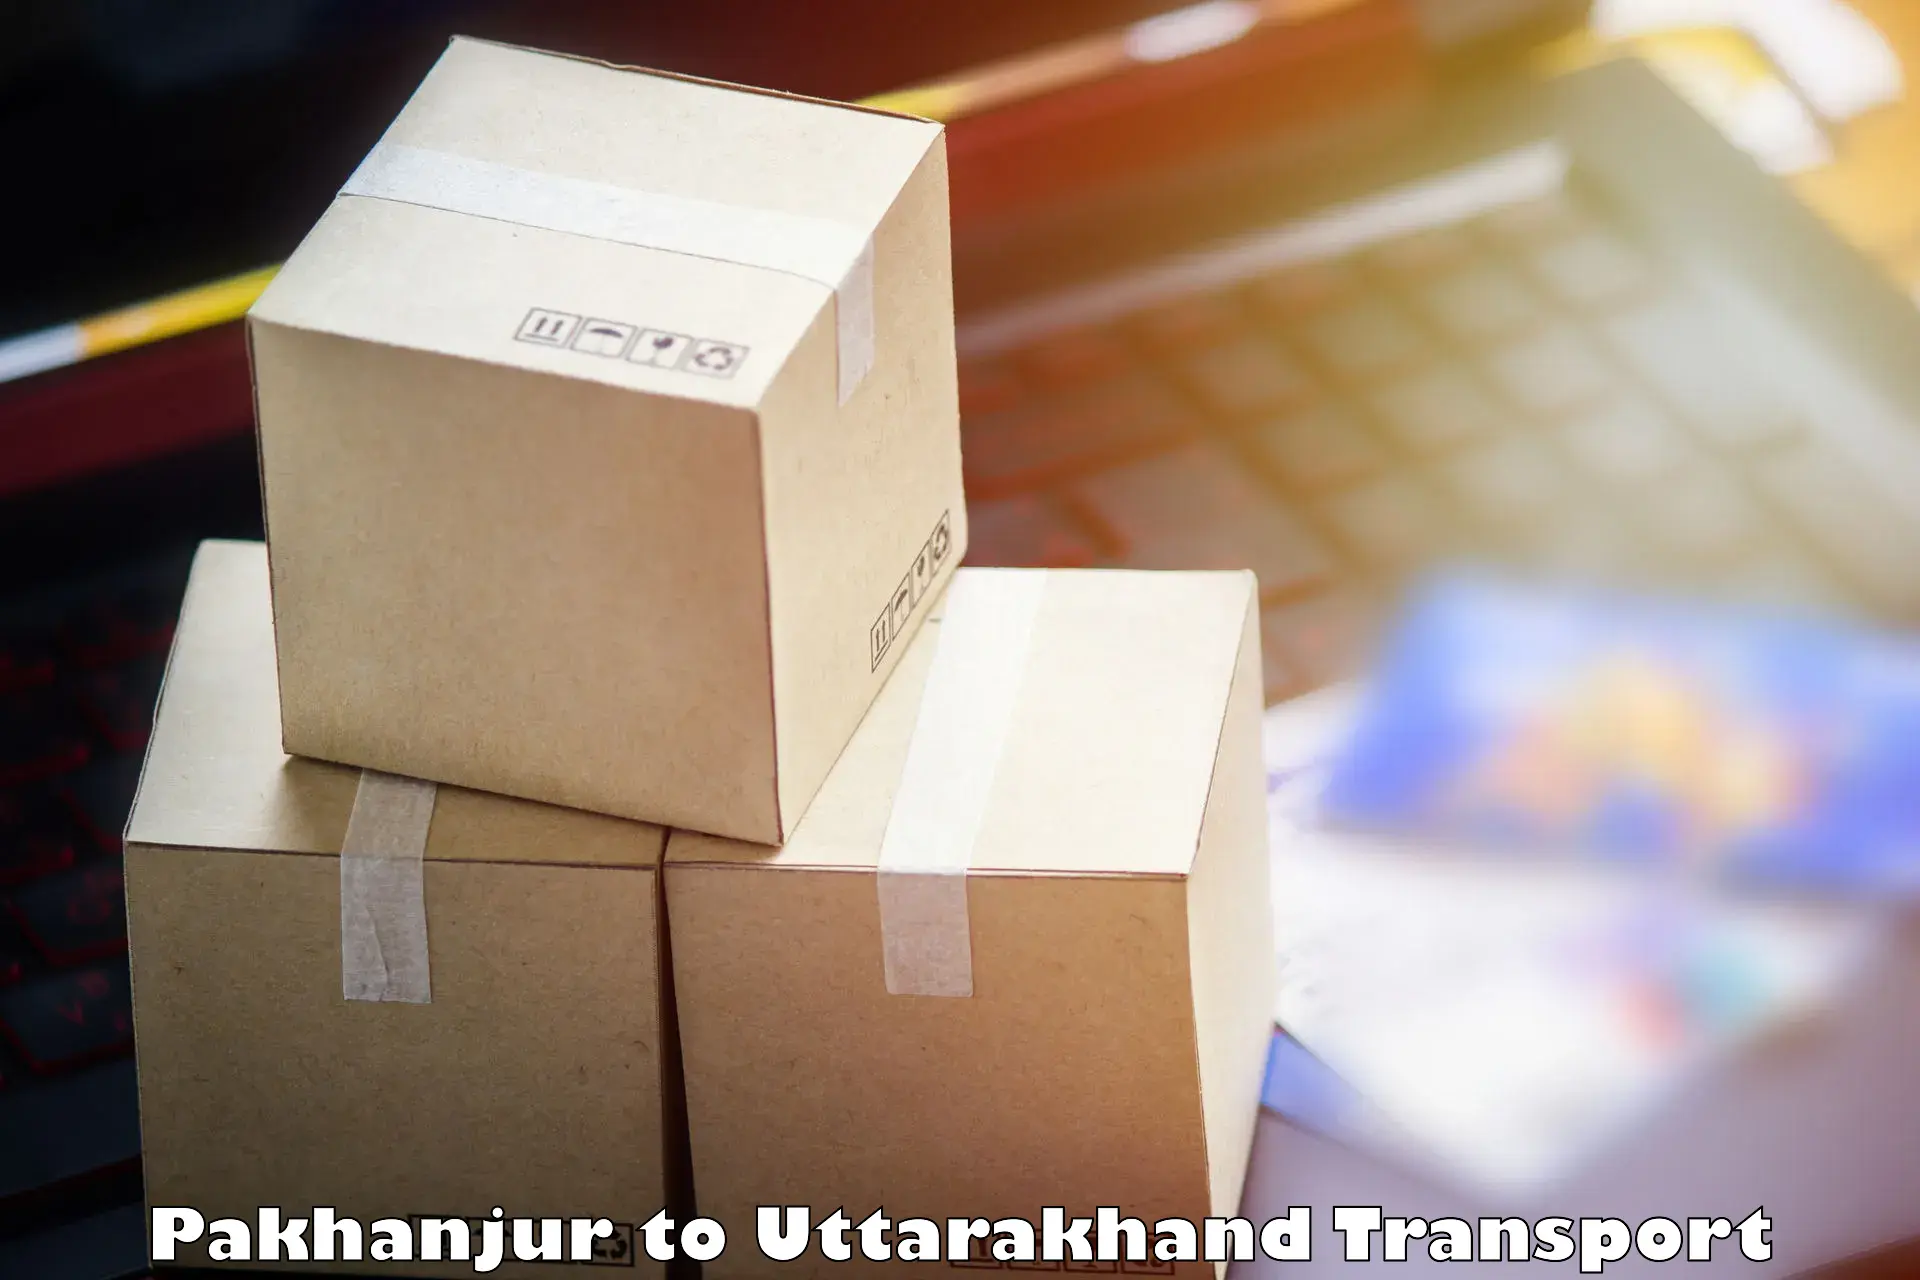 Goods transport services in Pakhanjur to Uttarakhand